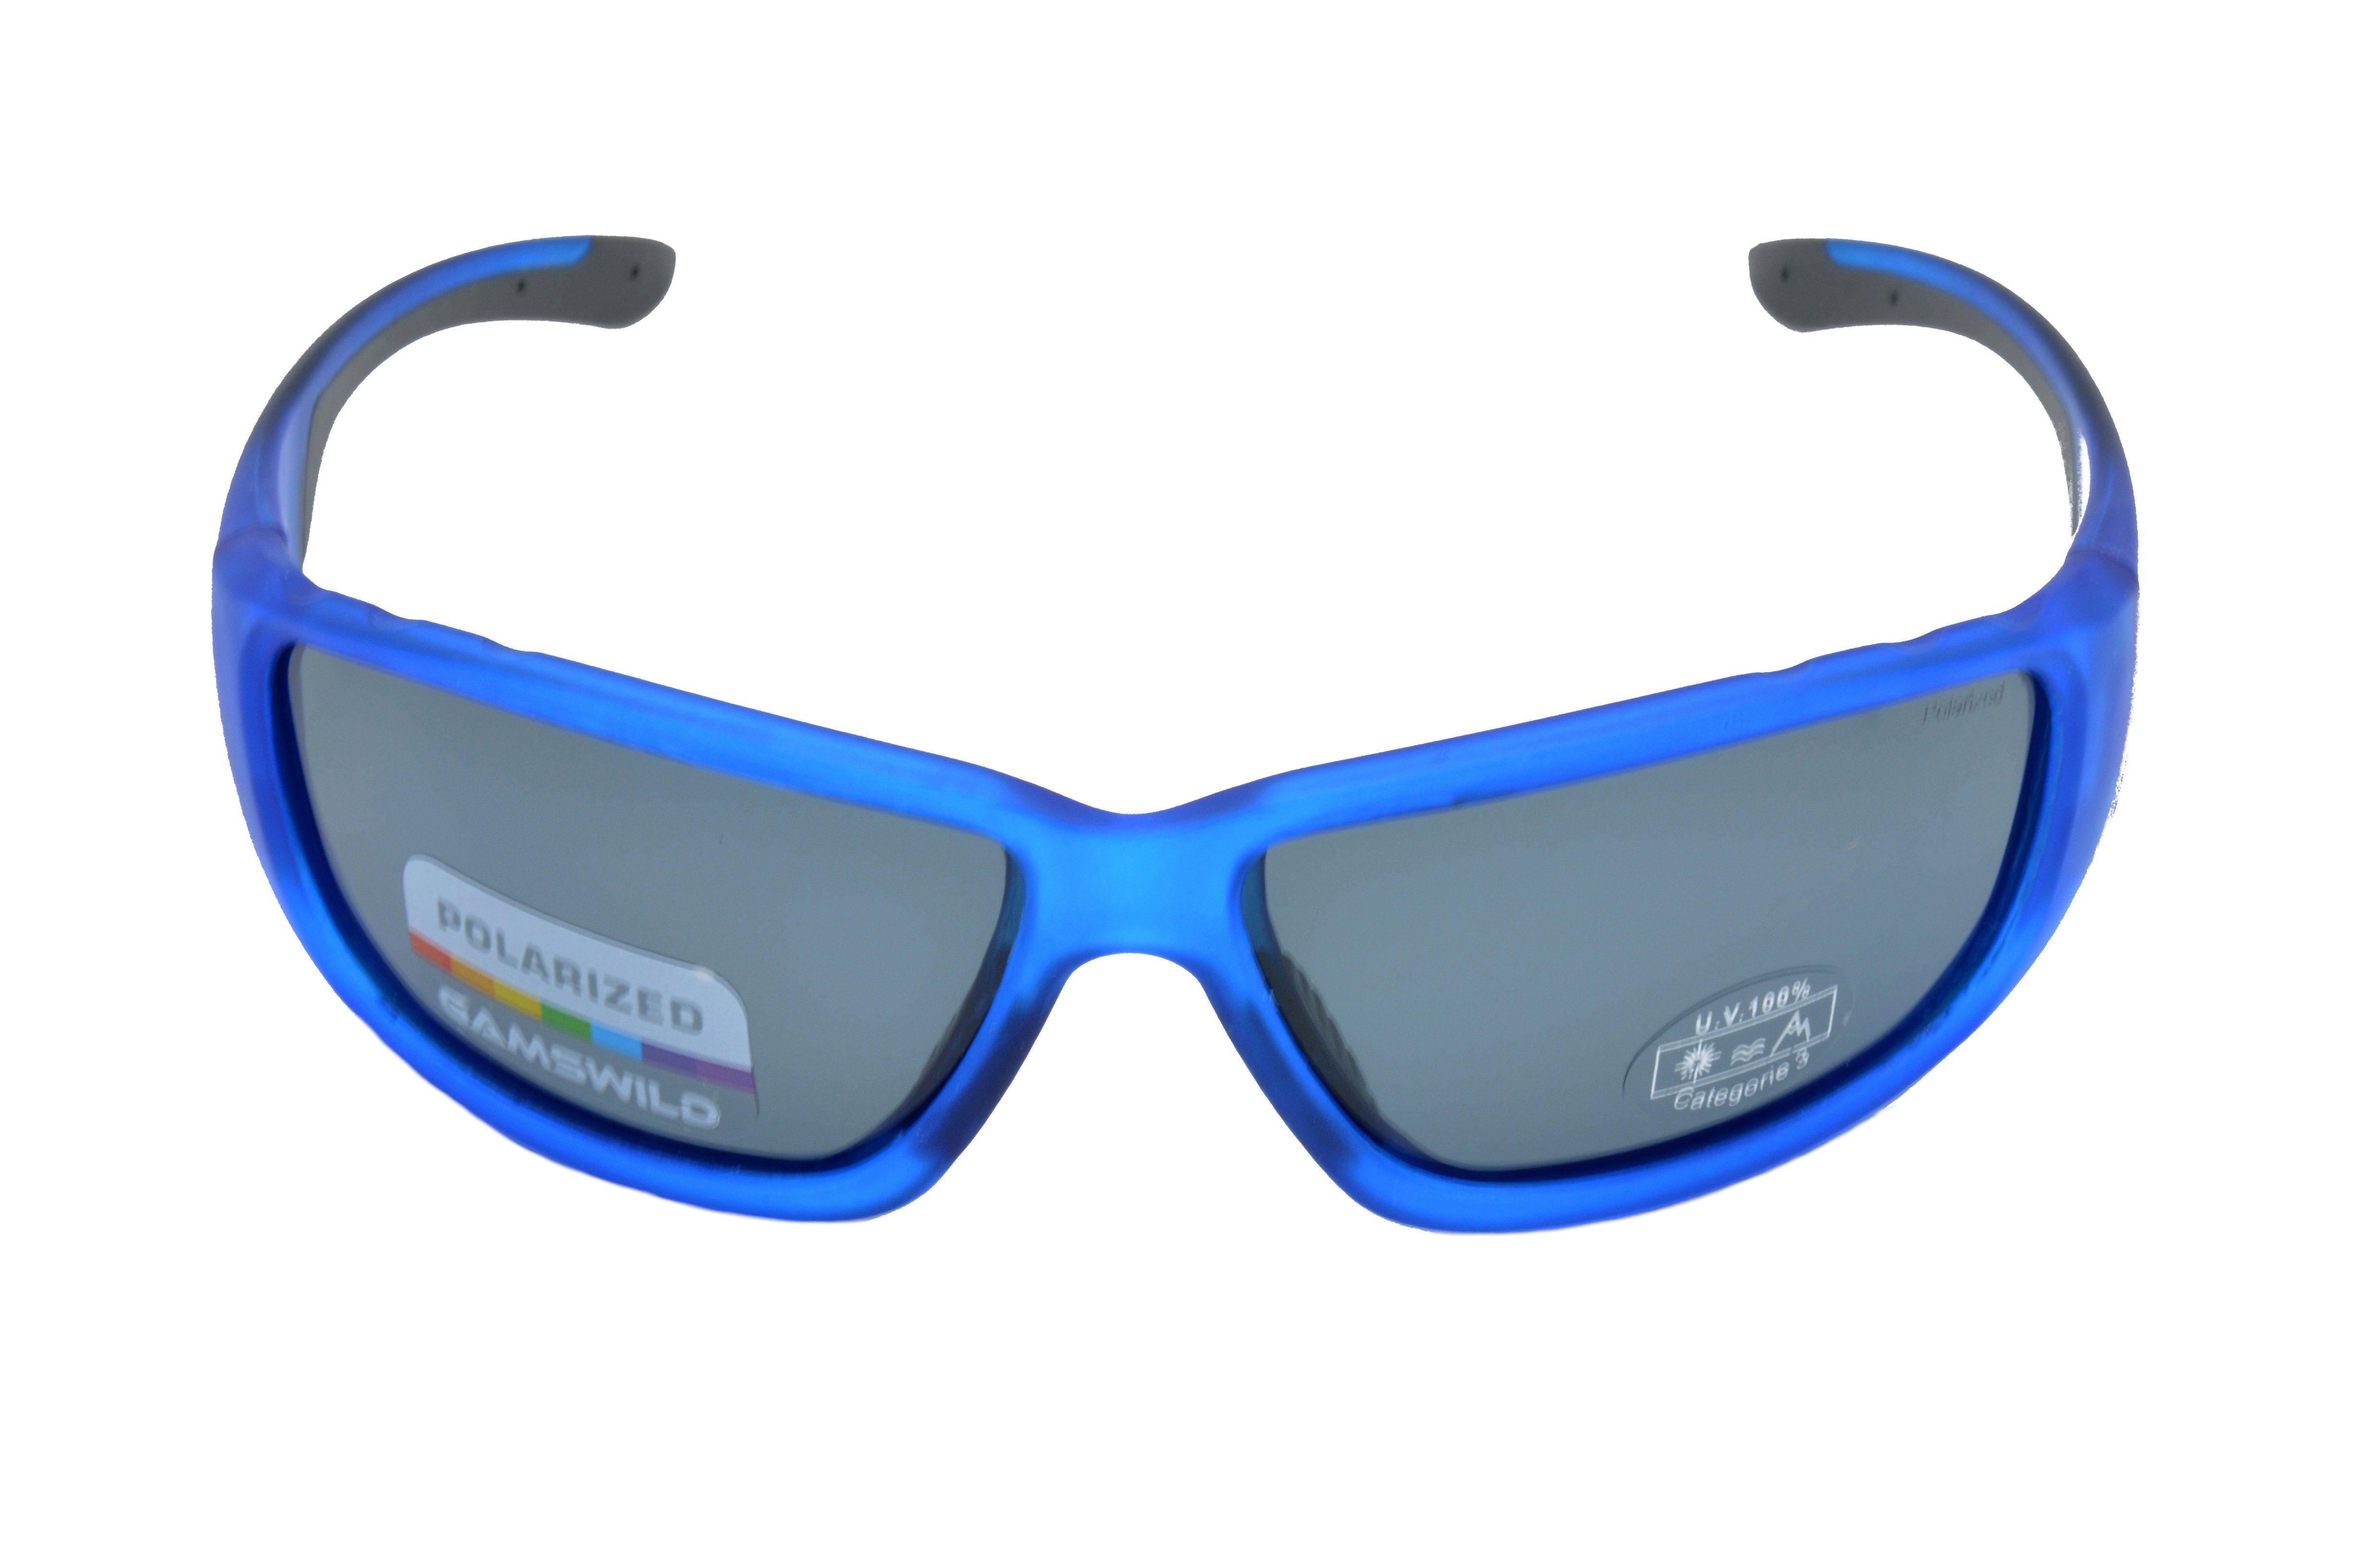 Herren Fahrradbrille WS9331 Sonnenbrille Skibrille grün, Gamswild rot, Unisex Sportbrille polarisiert Damen blau Fassung halbtransparente